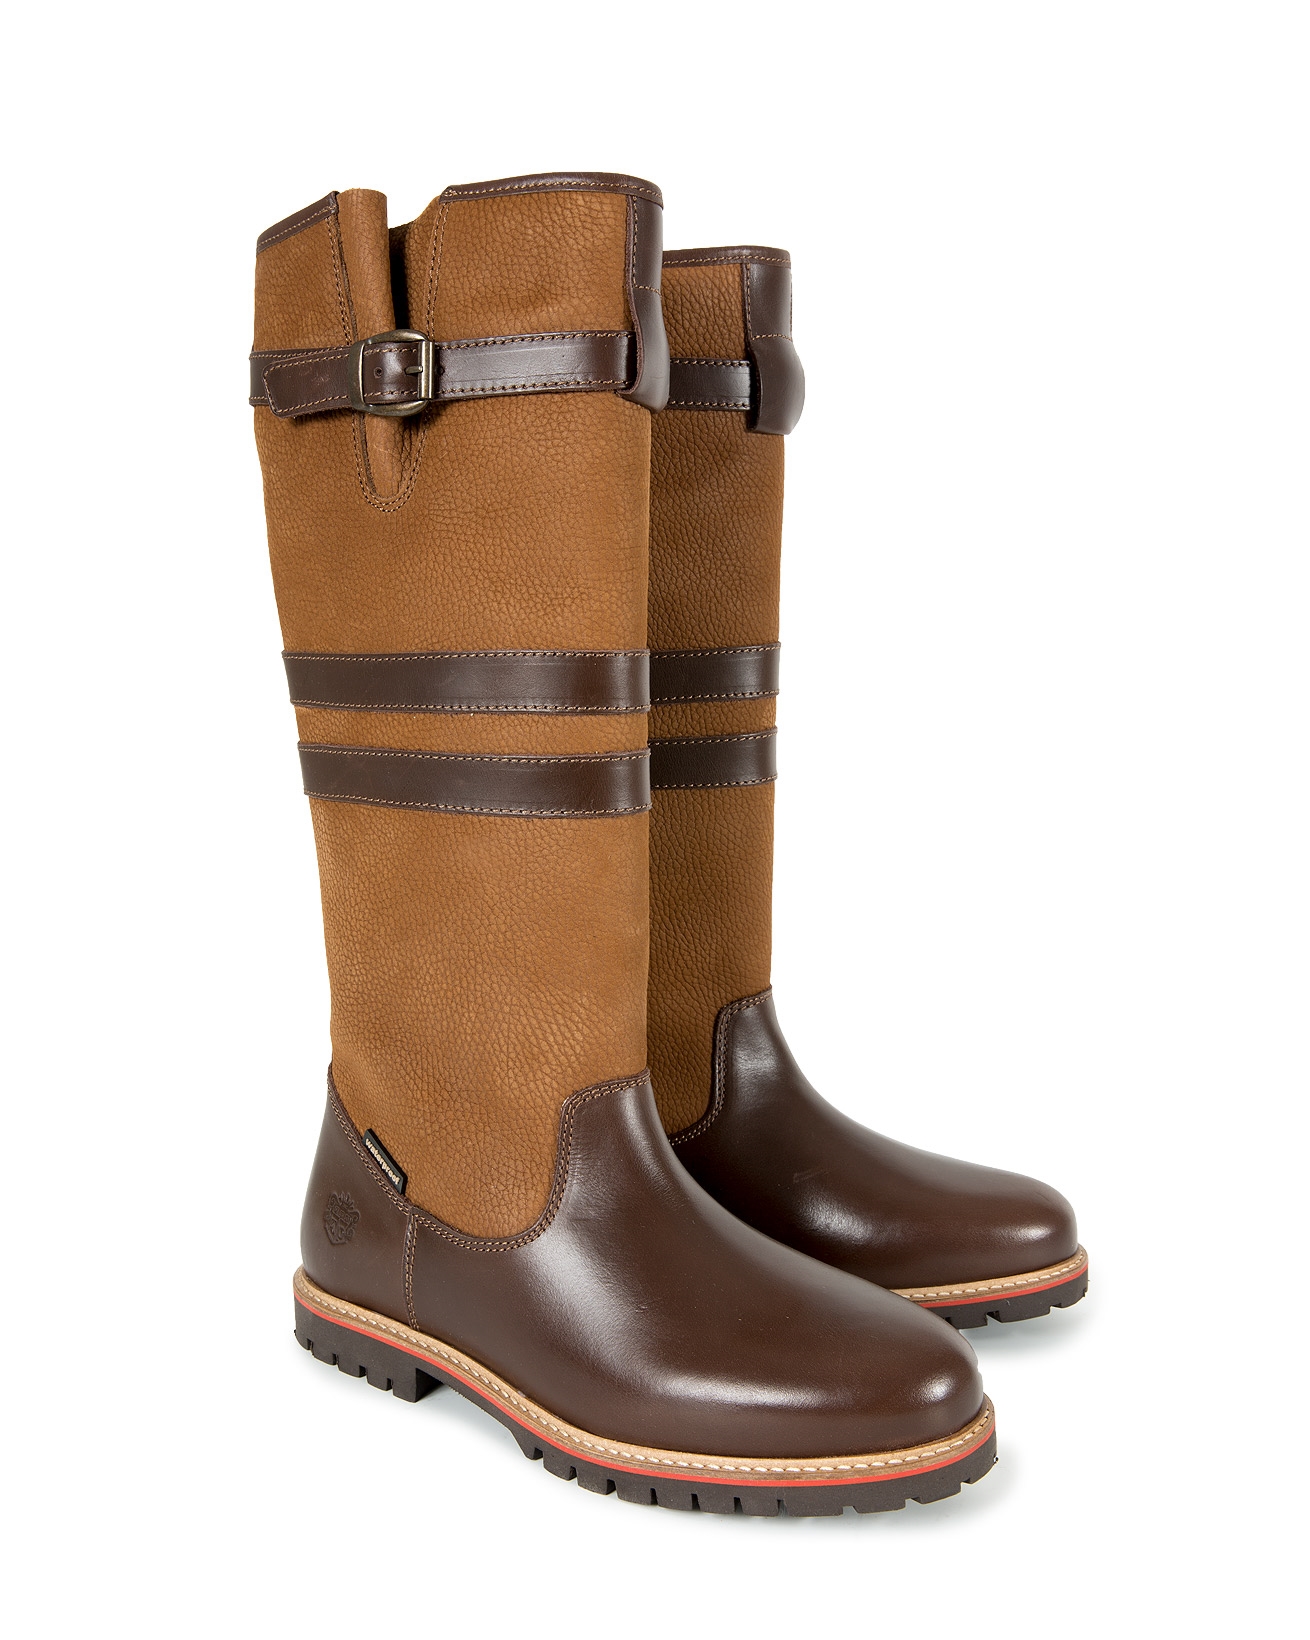 Waterproof Boots - Knee